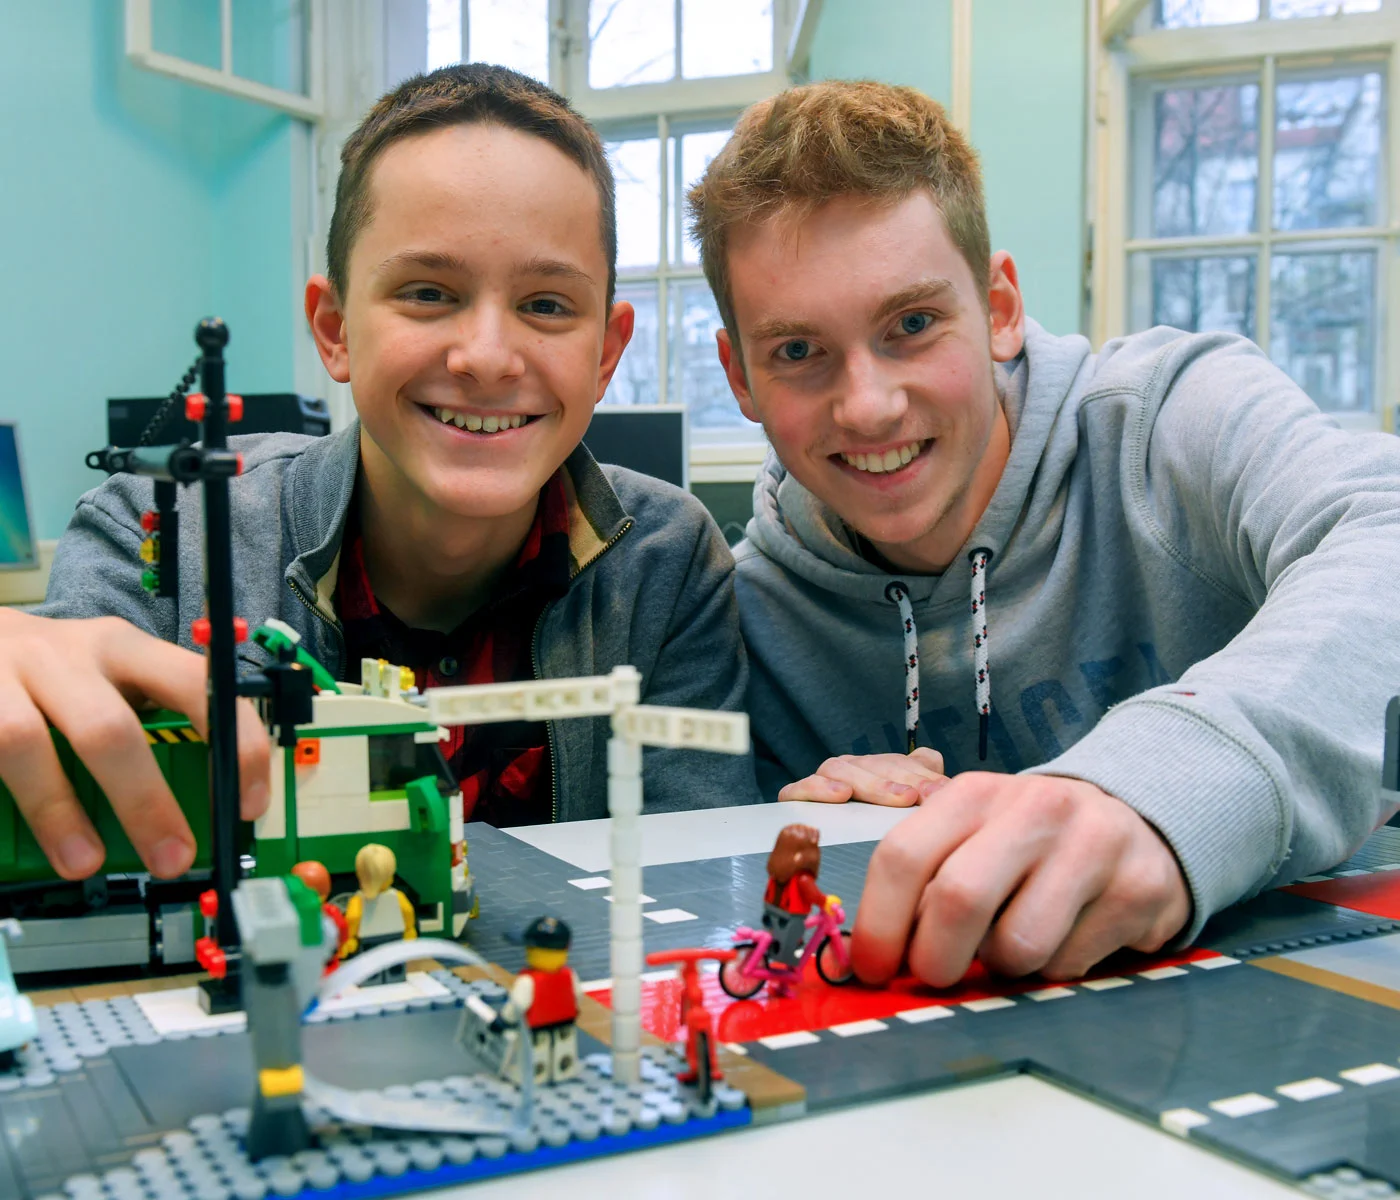 [Translate to English:] Angebote für SChüler: Zwei Jungen präsentieren lachend ihre Installation aus Lego.